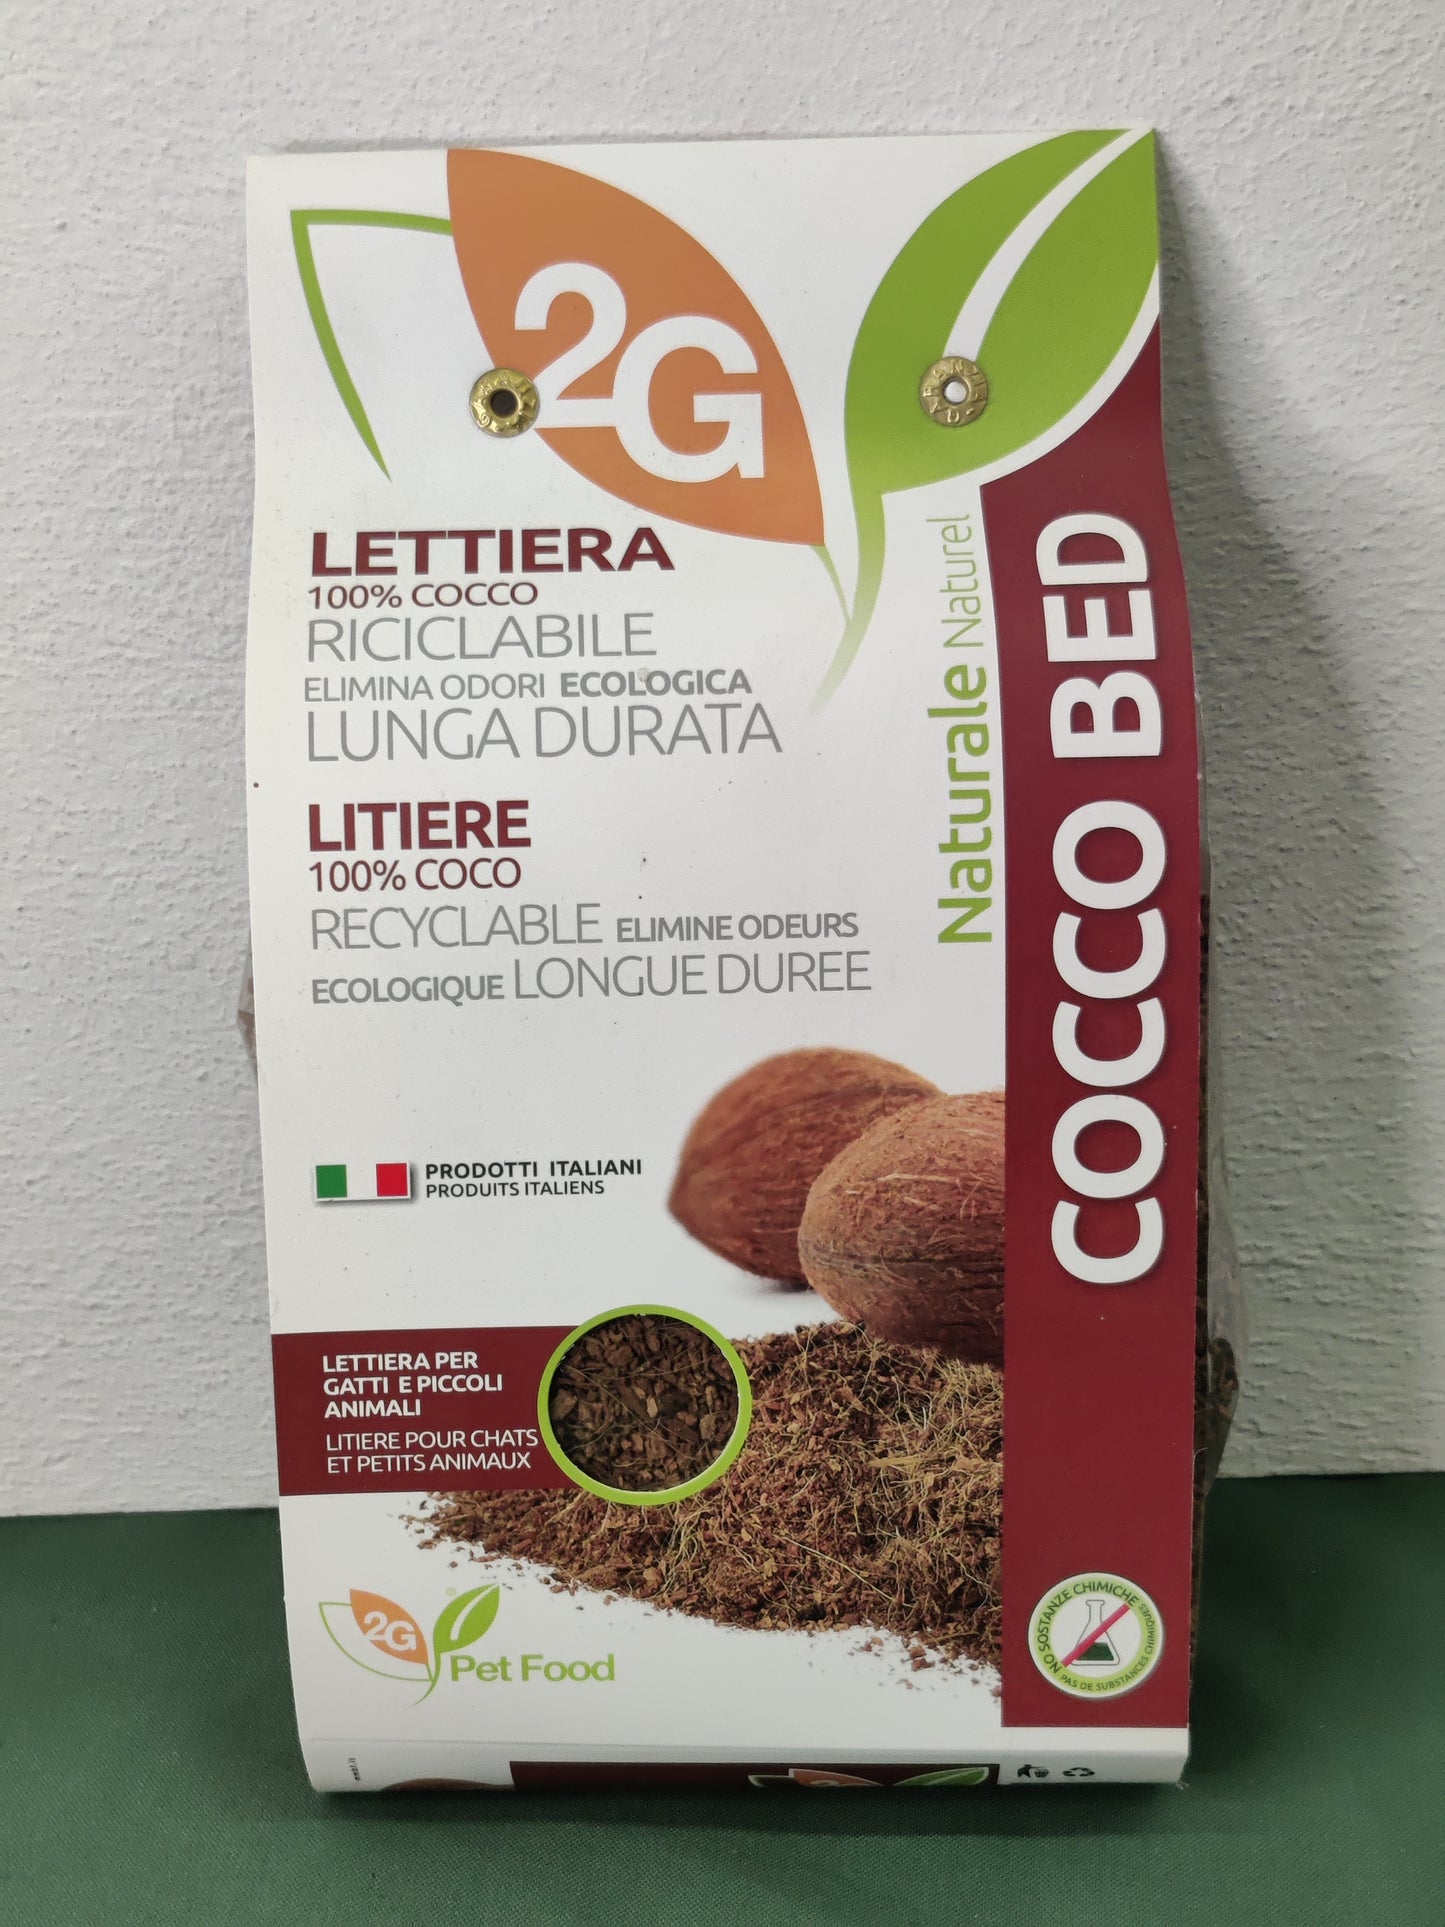 2G Pet Food - Lettiera con fibra Cocco 100% naturale 100g